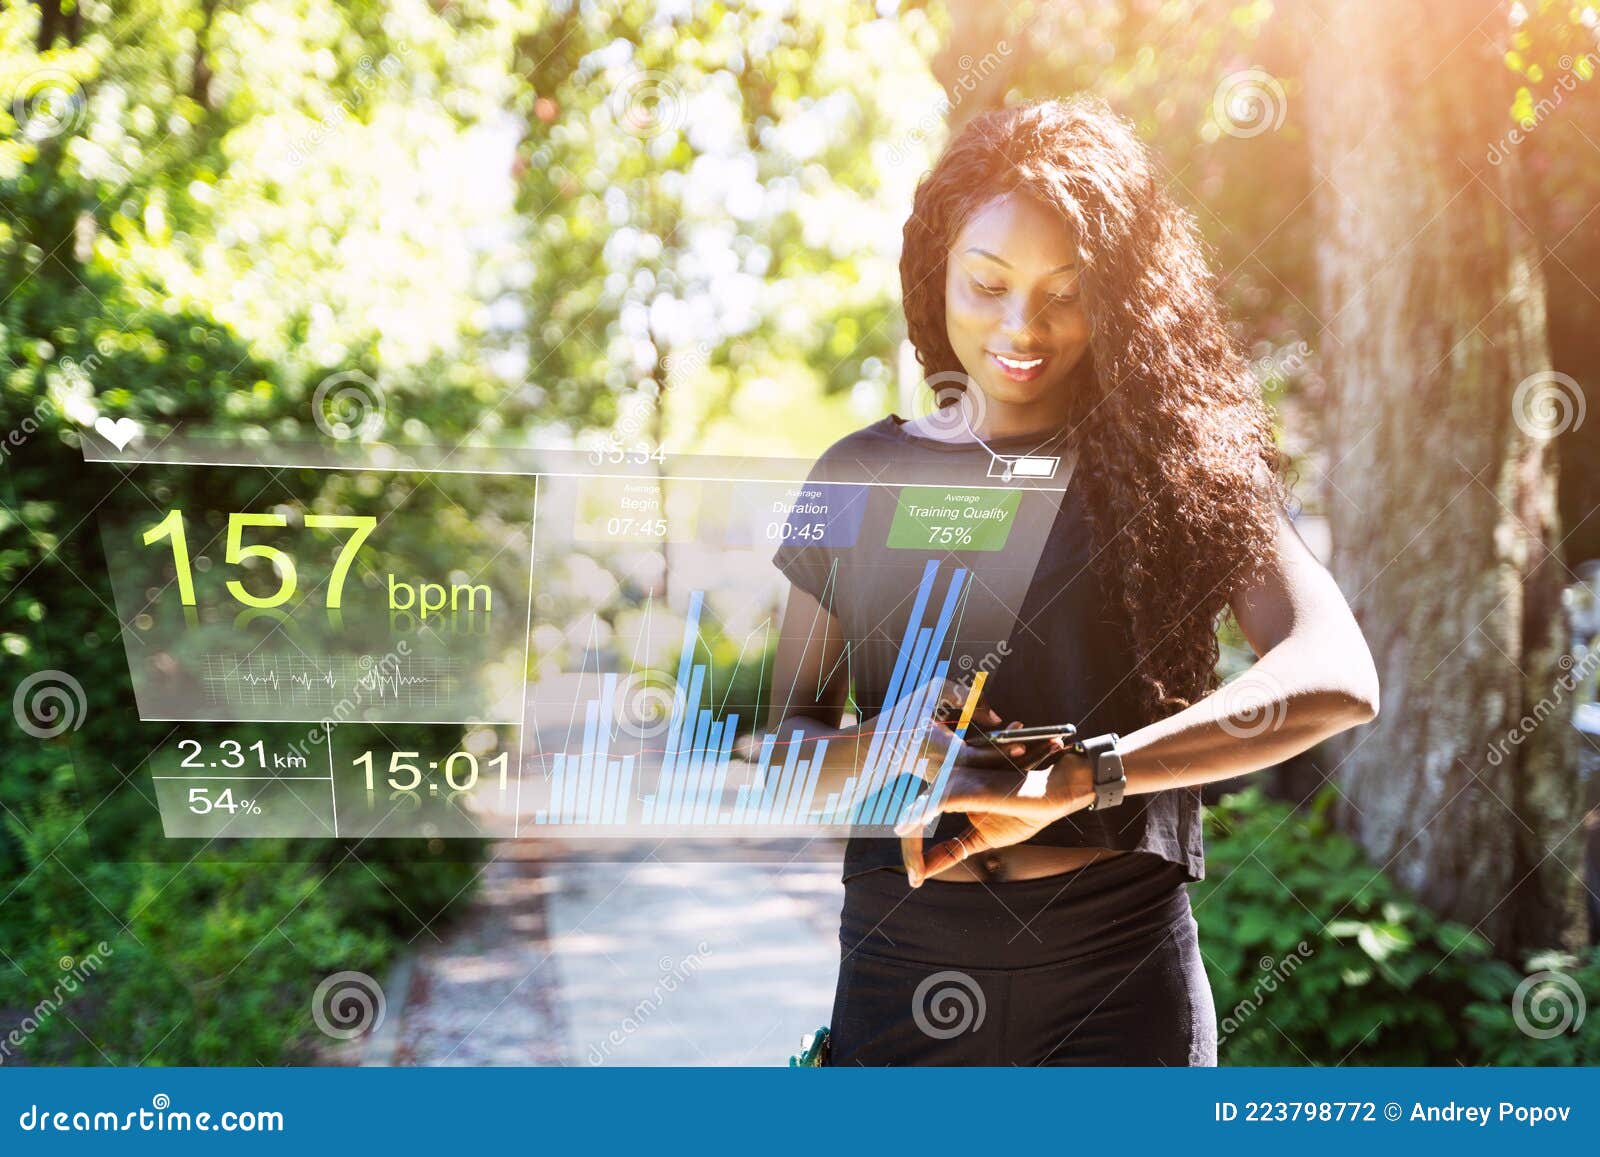 smart watch health gadget for running